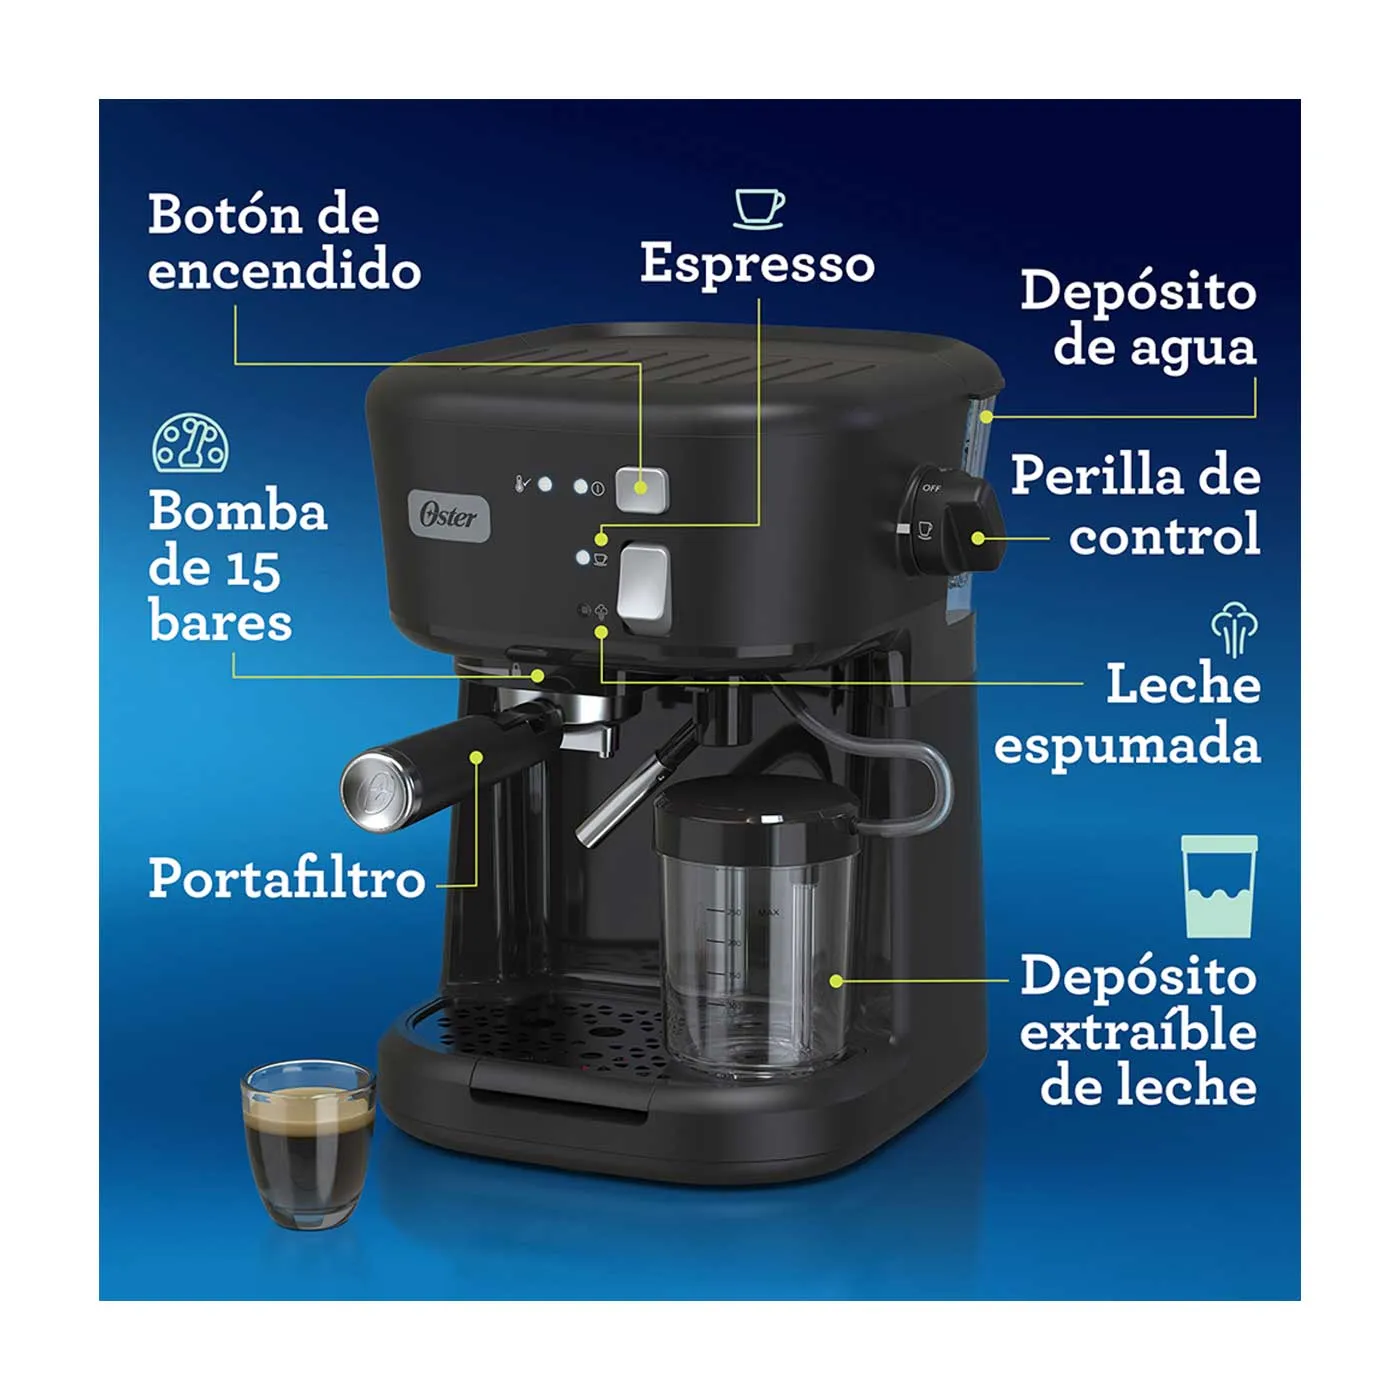 Cafetera para espresso y Capuccino Oster BVSTEM5501B